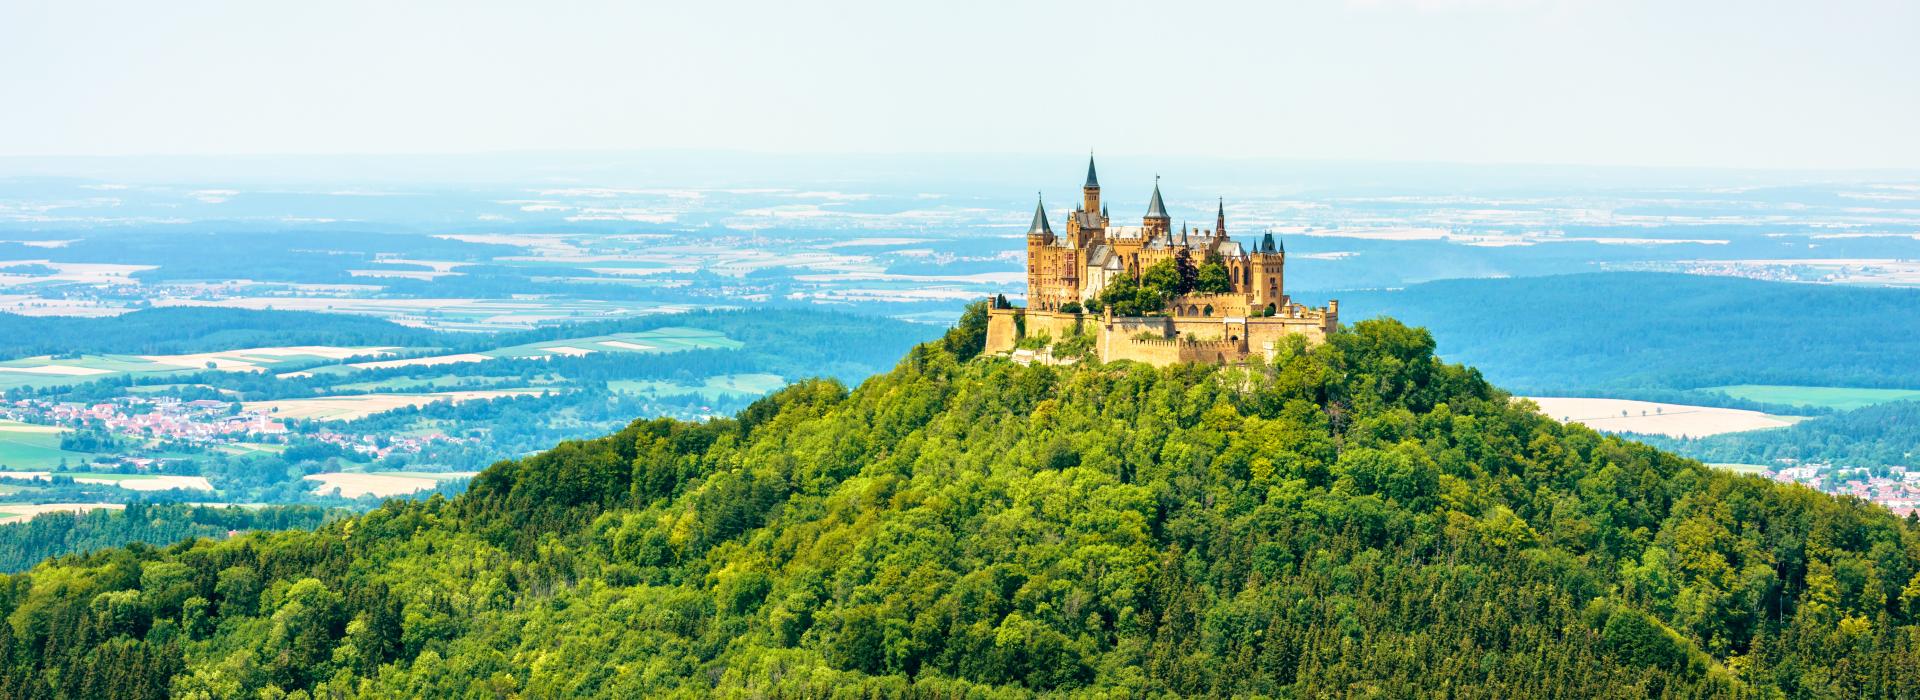 Schloss Hohenzollern auf der Bergspitze, Deutschland. Dieses Schloss ist ein berühmtes Wahrzeichen in der Nähe von Stuttgart.